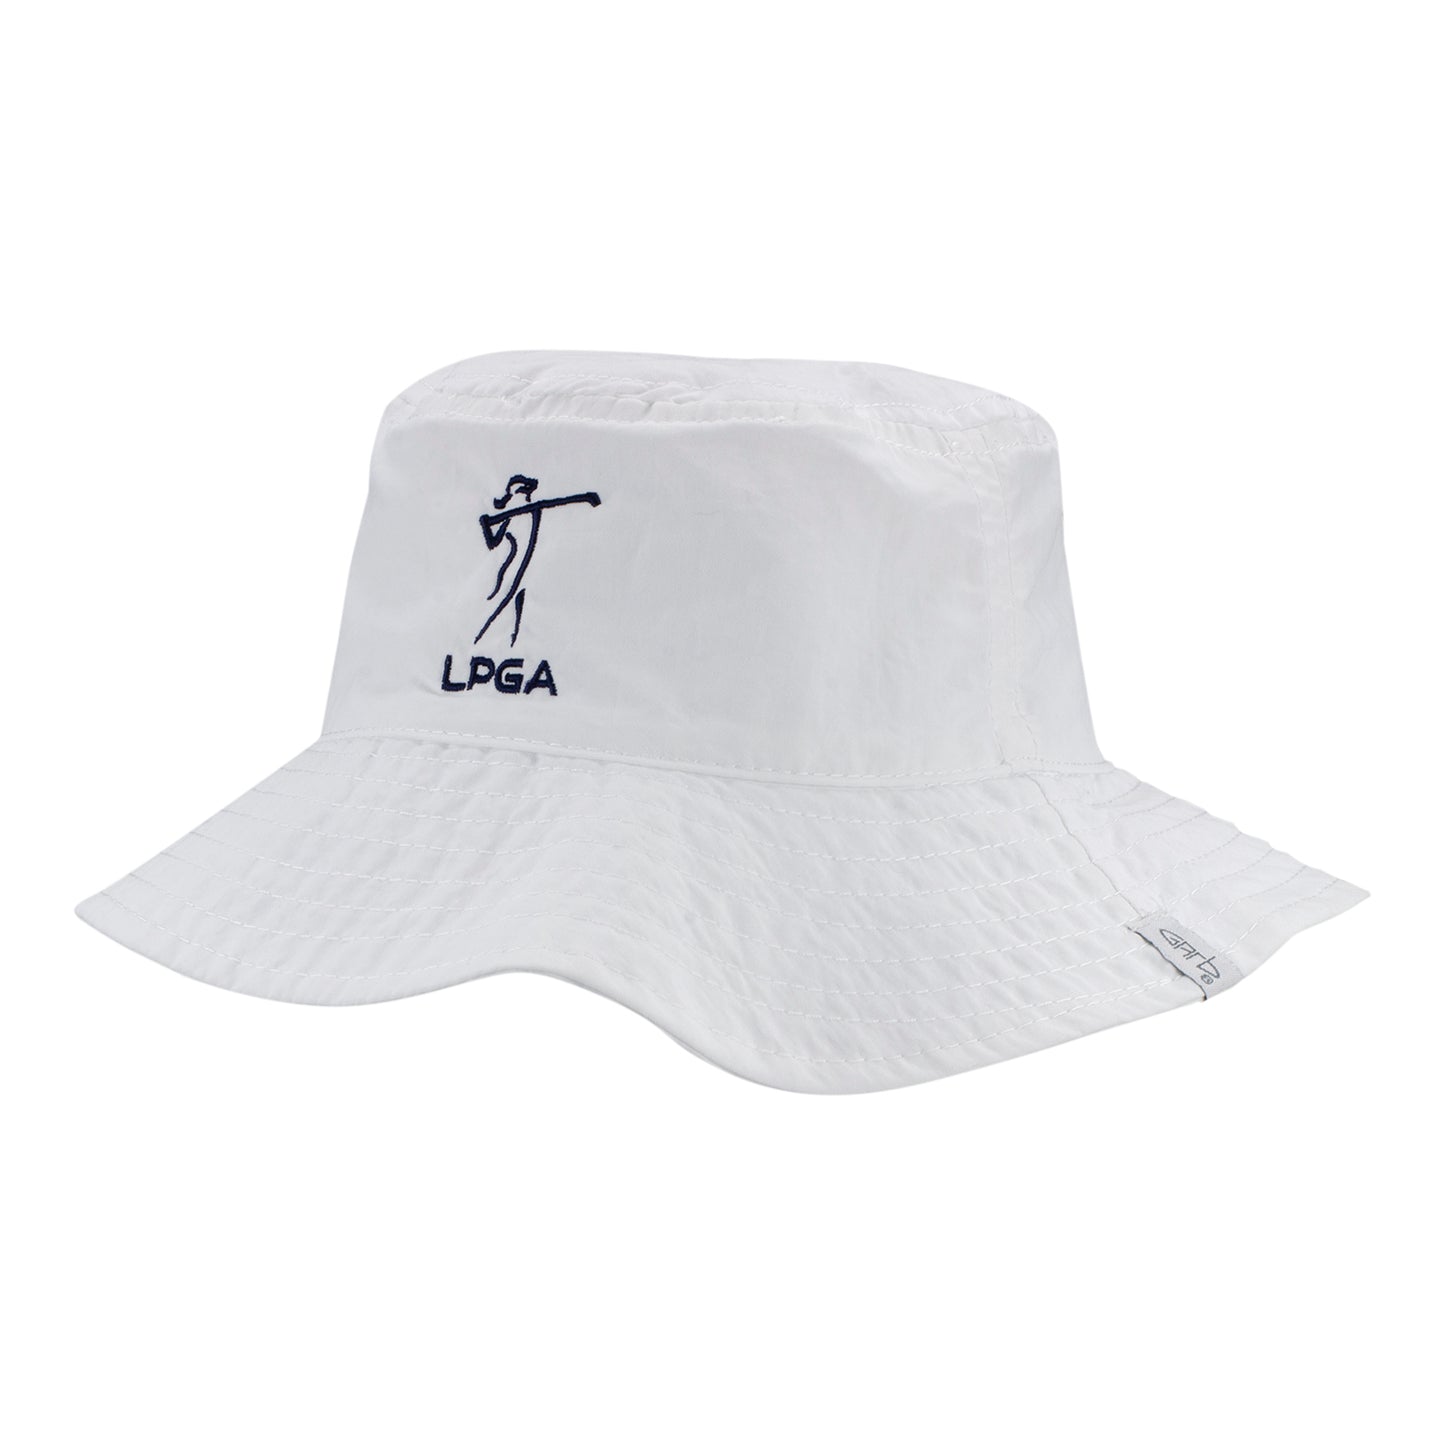 Garb LPGA Kennedy Infant Bonnet in White - Angled Left Side View